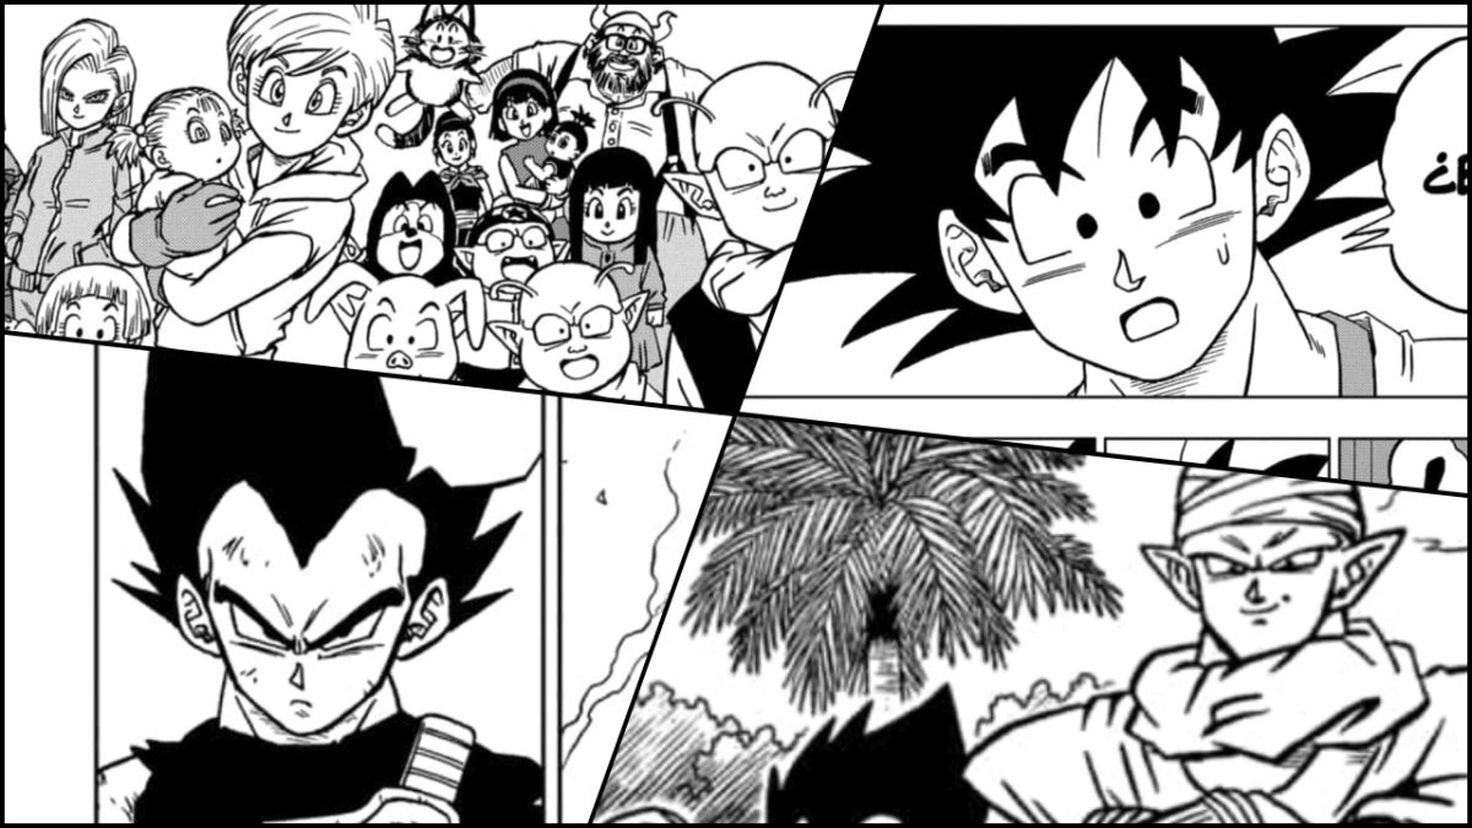 Ler Dragon Ball Super Manga Capítulo 68 em Português Grátis Online